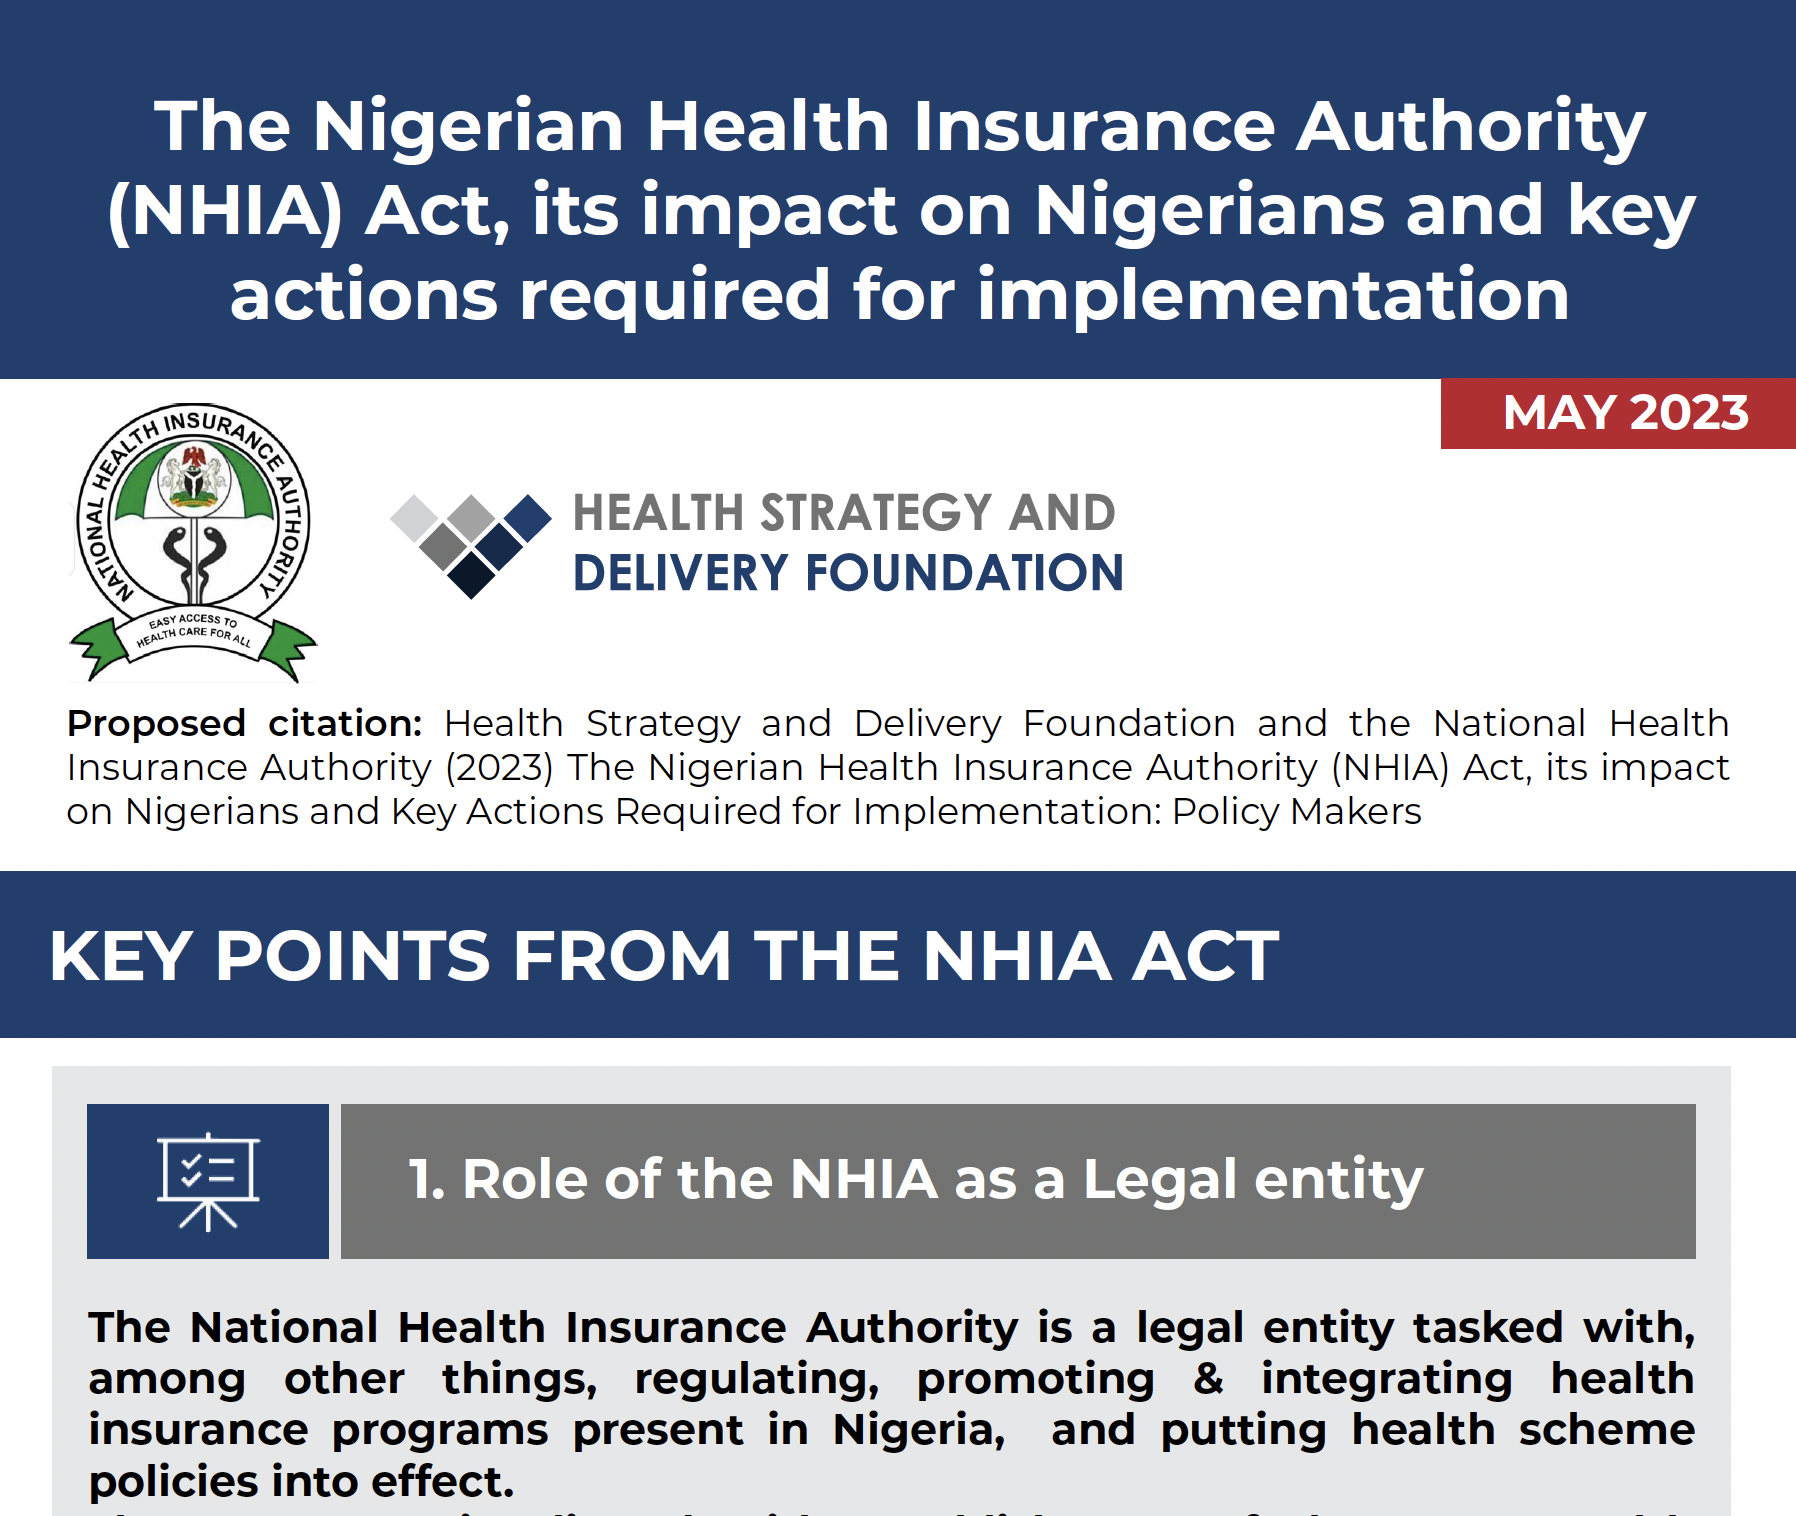 La loi sur l'Autorité nigériane d'assurance maladie : Actions requises pour la mise en œuvre à l'intention des décideurs politiques